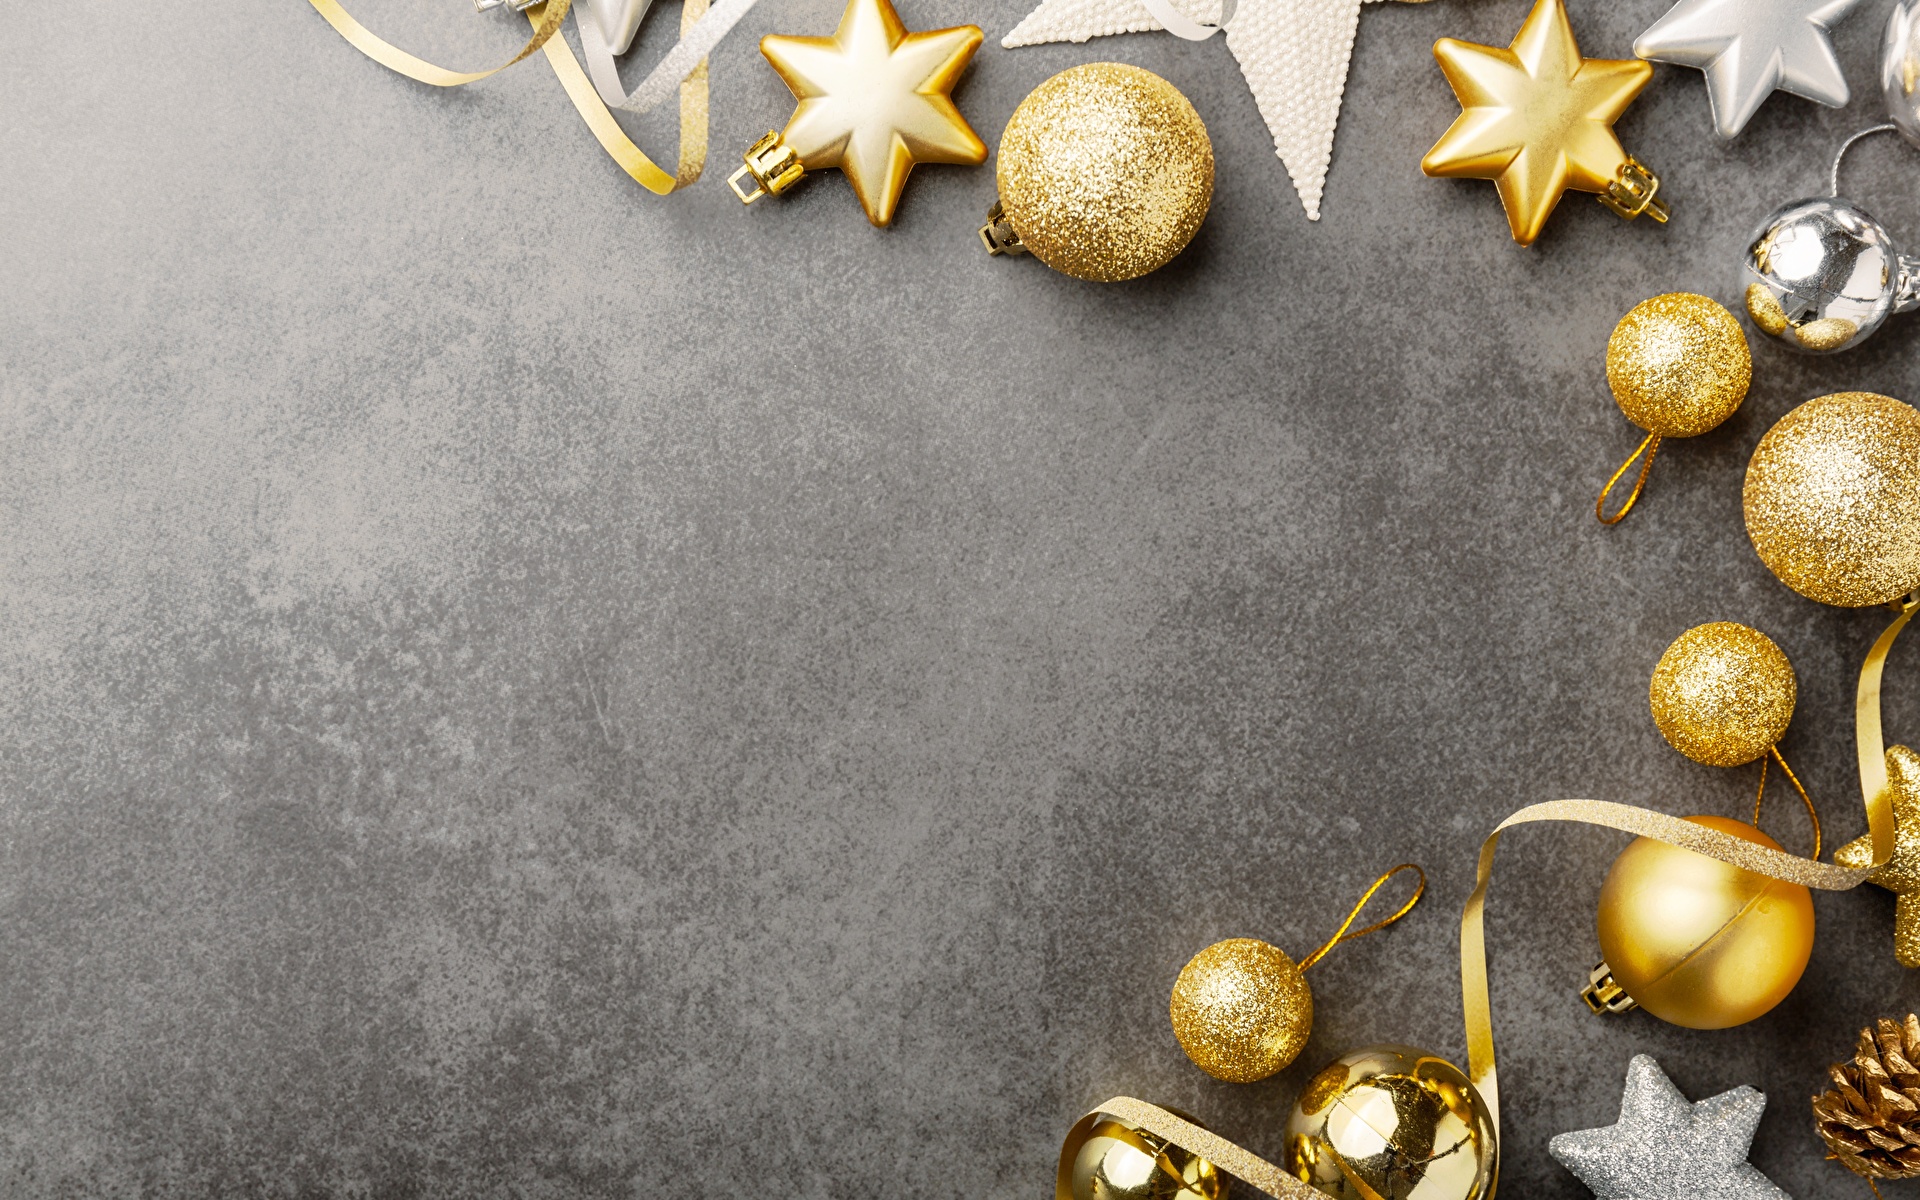 Картинка Новый год Шарики Шаблон поздравительной открытки Серый фон Украшения 1920x1200 Рождество Шар сером фоне